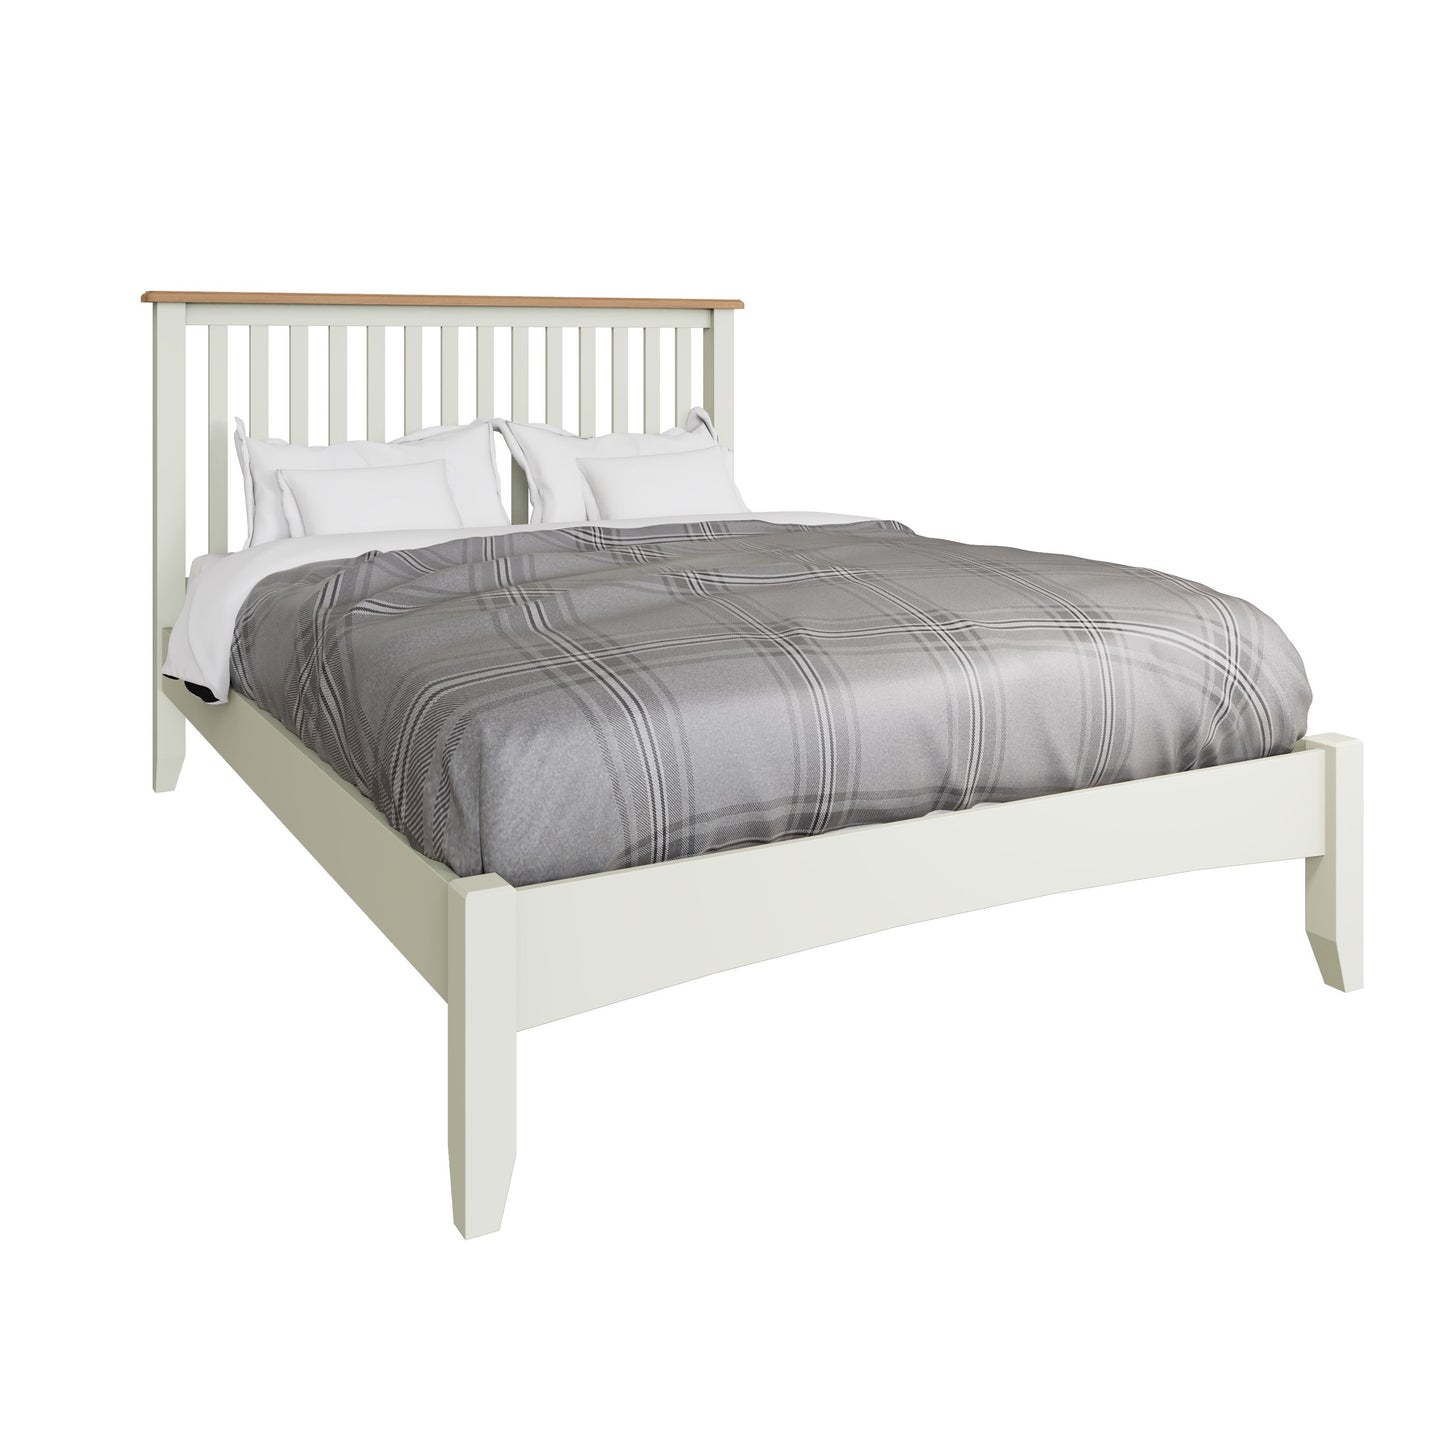 GA White Wooden Bed Frame